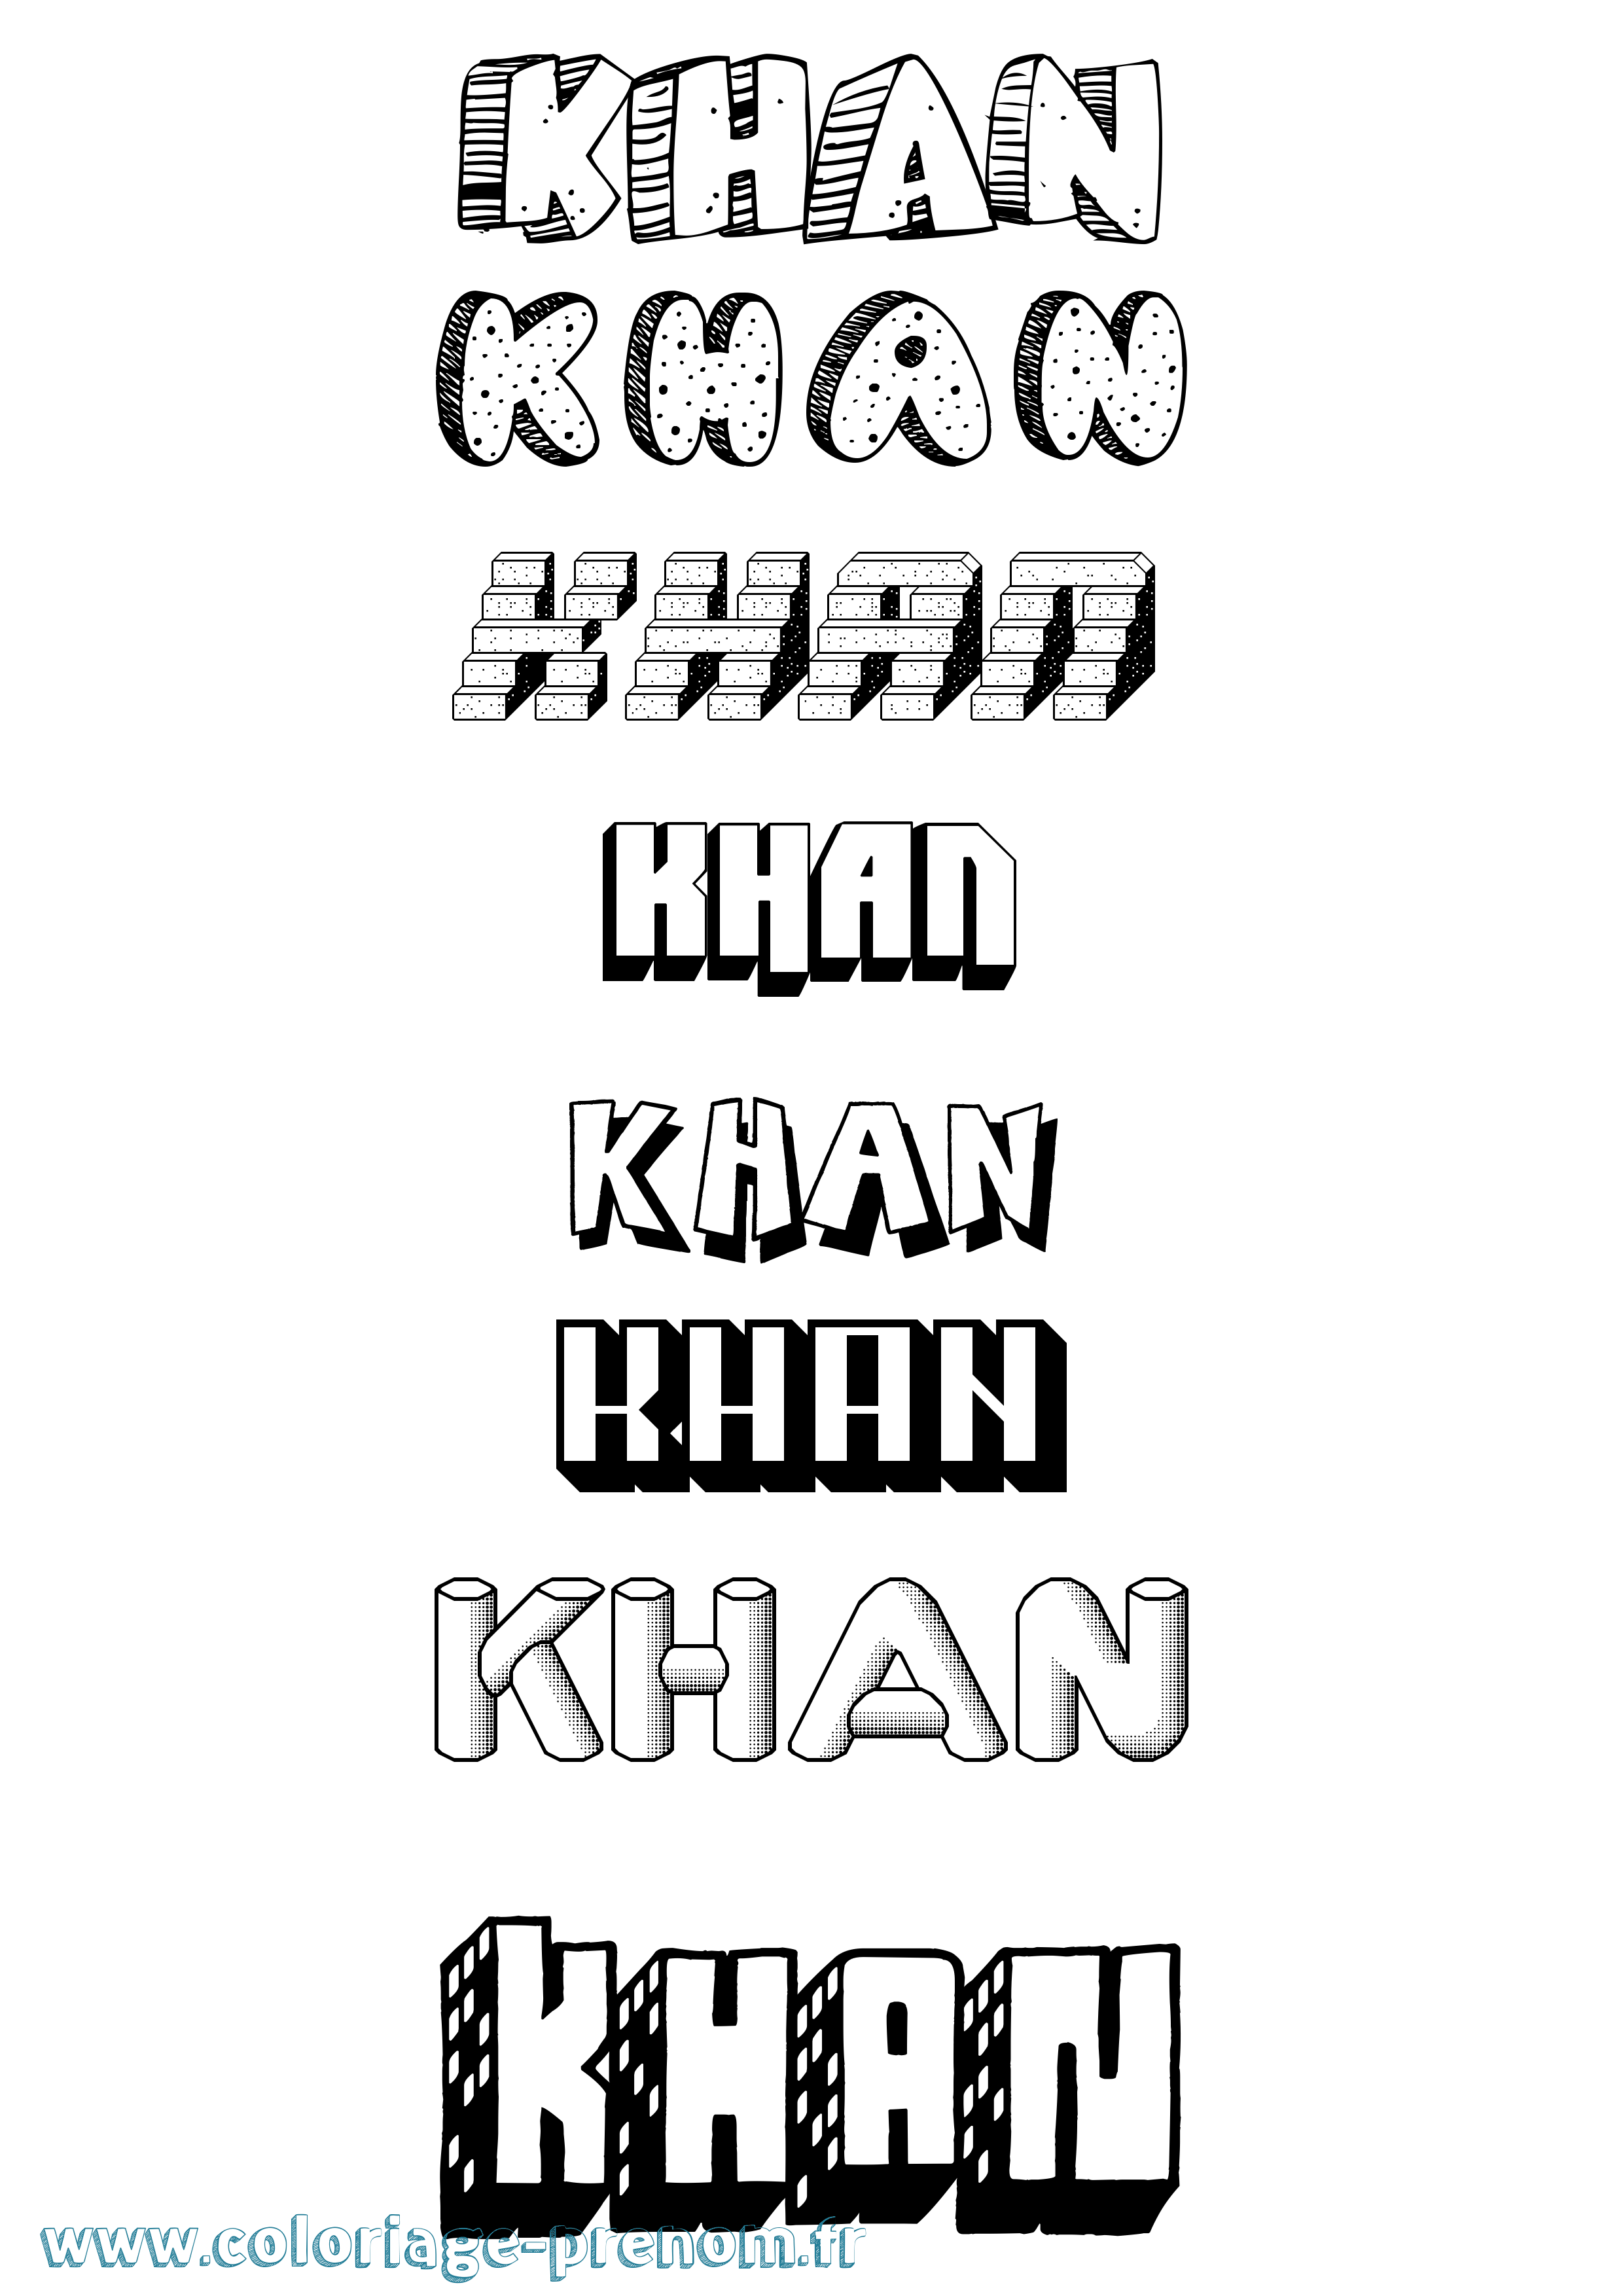 Coloriage prénom Khan Effet 3D